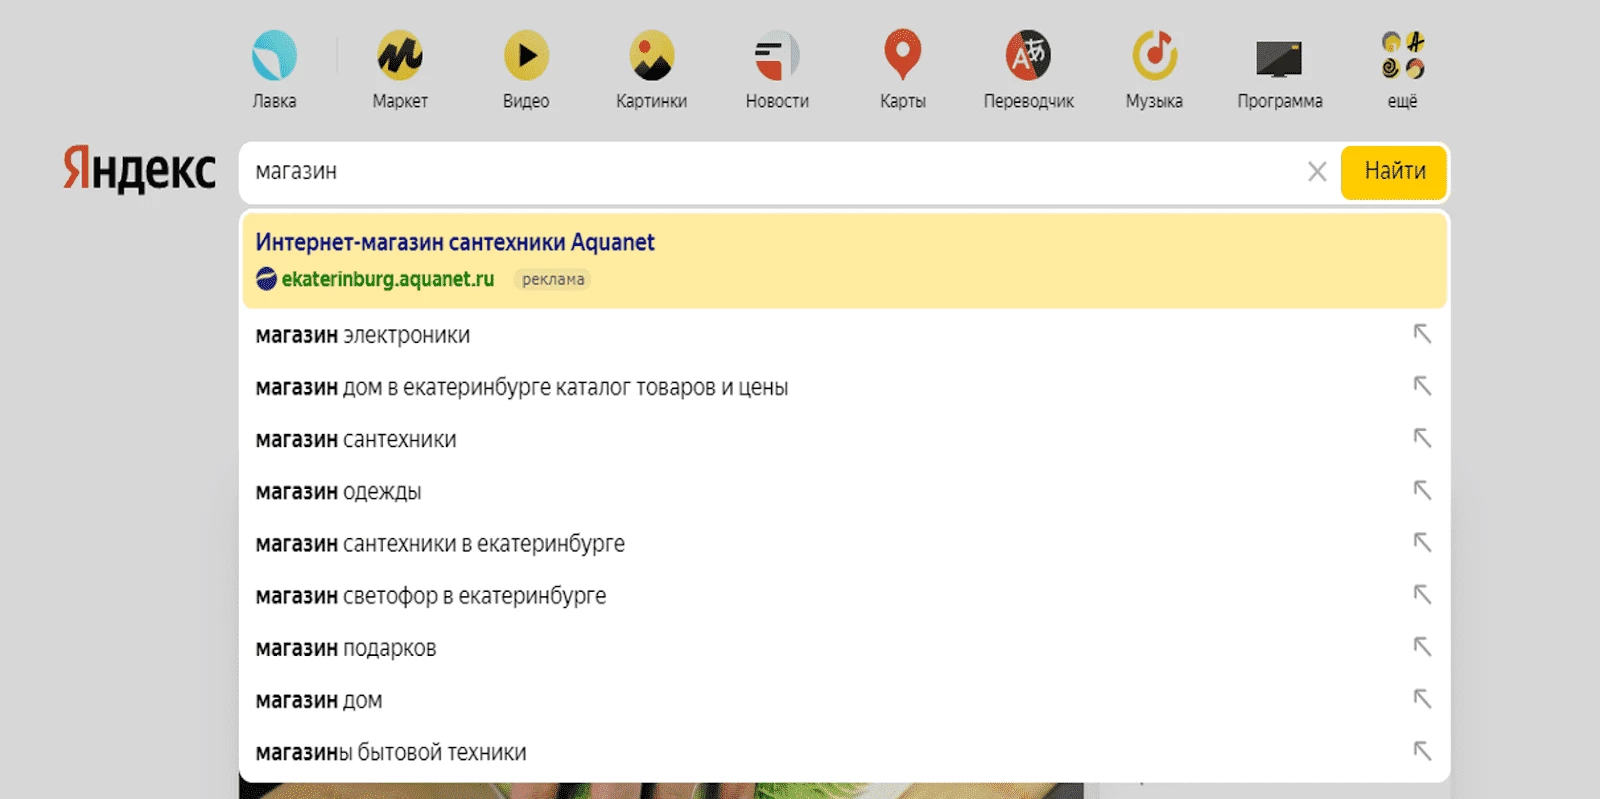 Пример баннера из подсказок в Яндексе